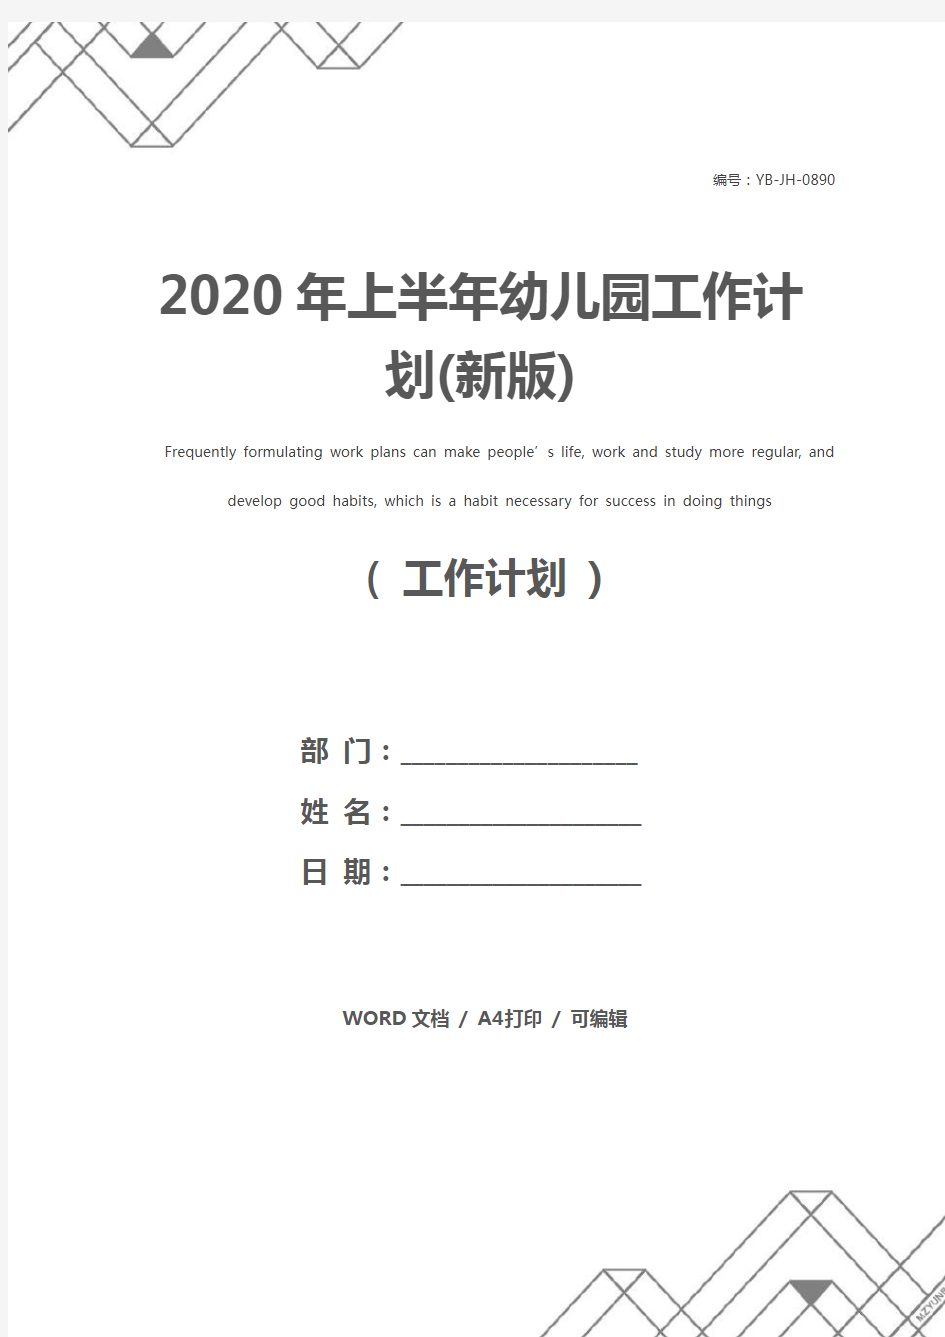 2020年上半年幼儿园工作计划(新版)